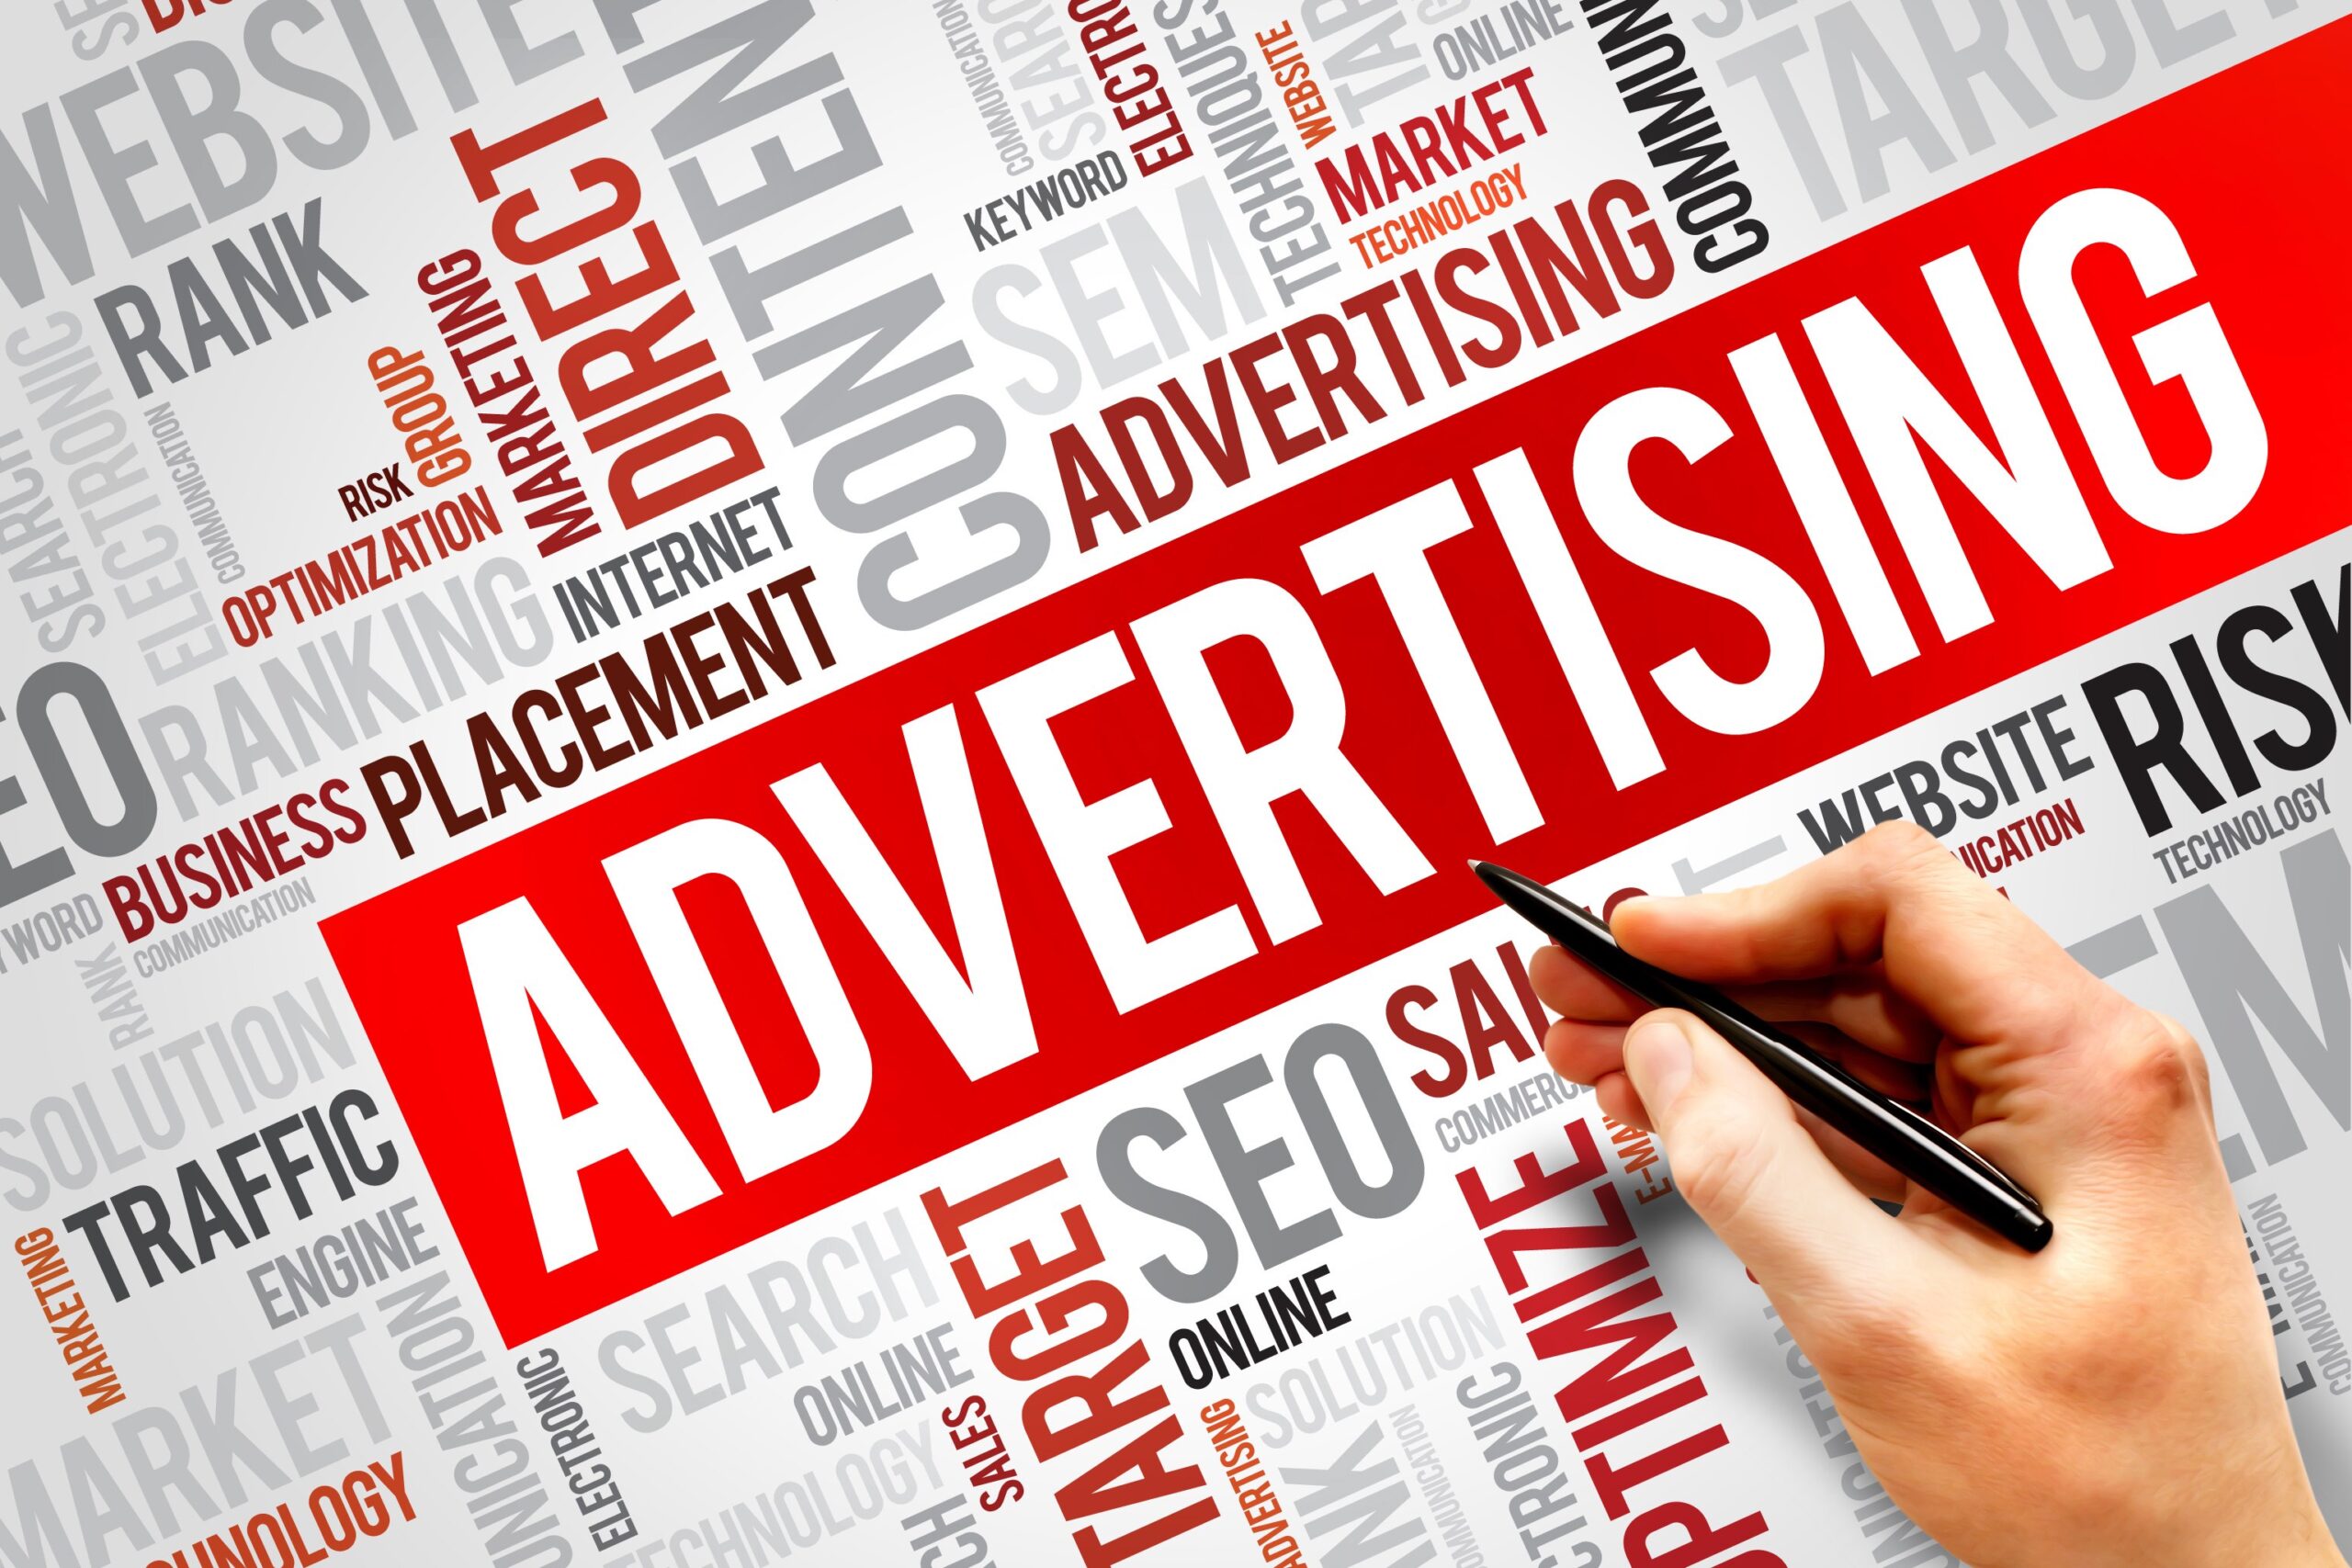 أهمية الدعاية والاعلان في التسويق الإلكتروني